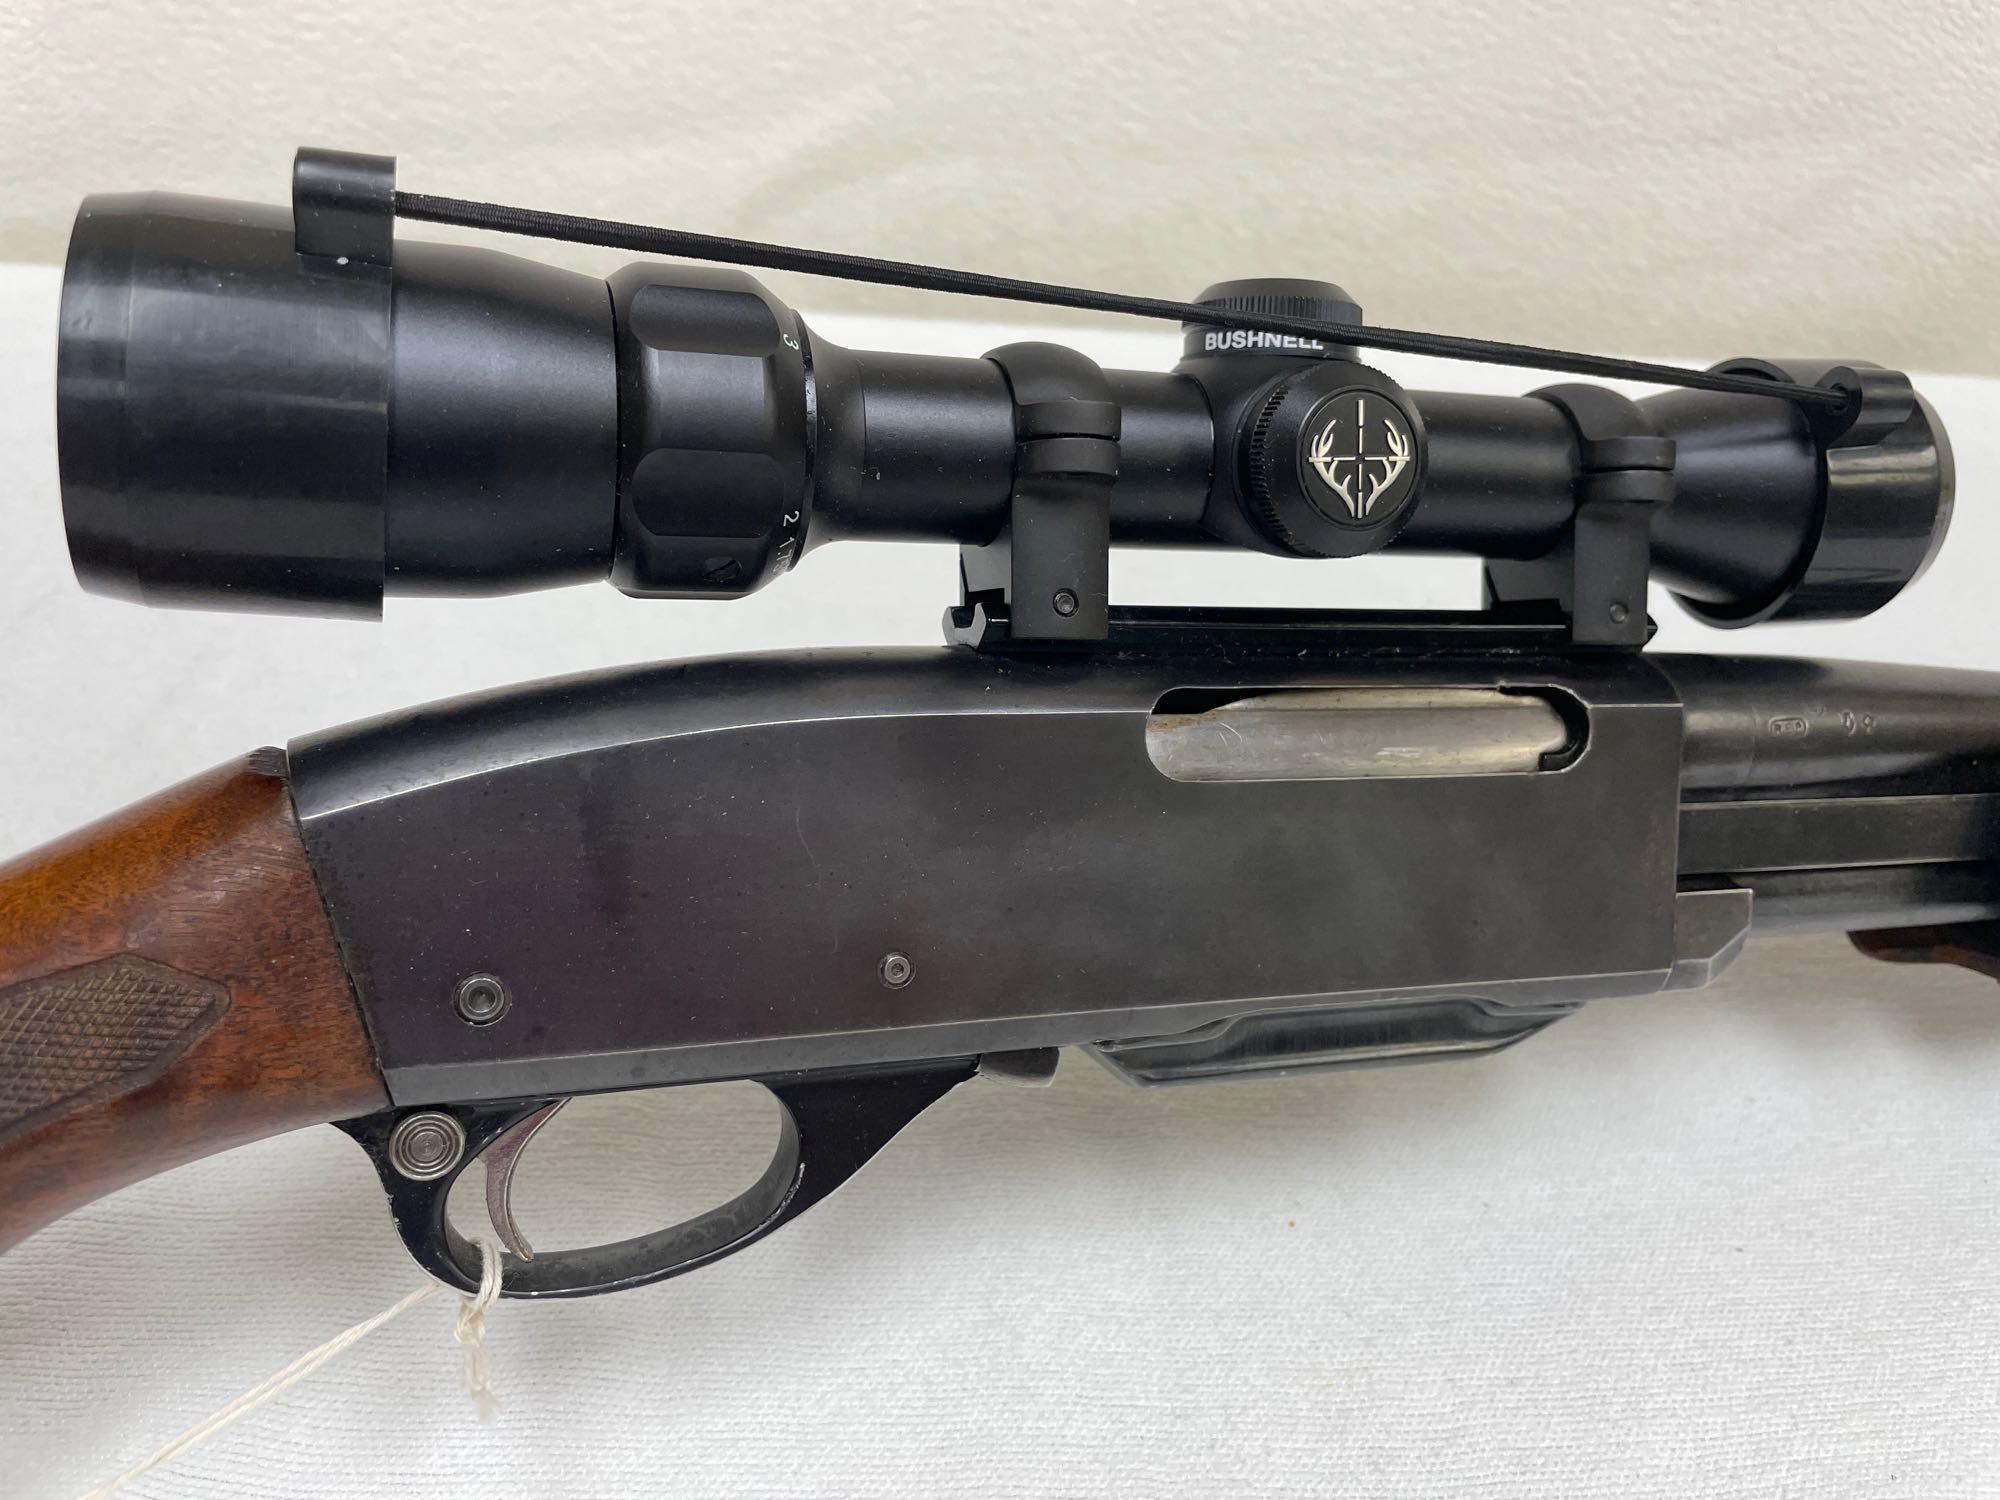 Remington Model 760 Pump Action Rifle